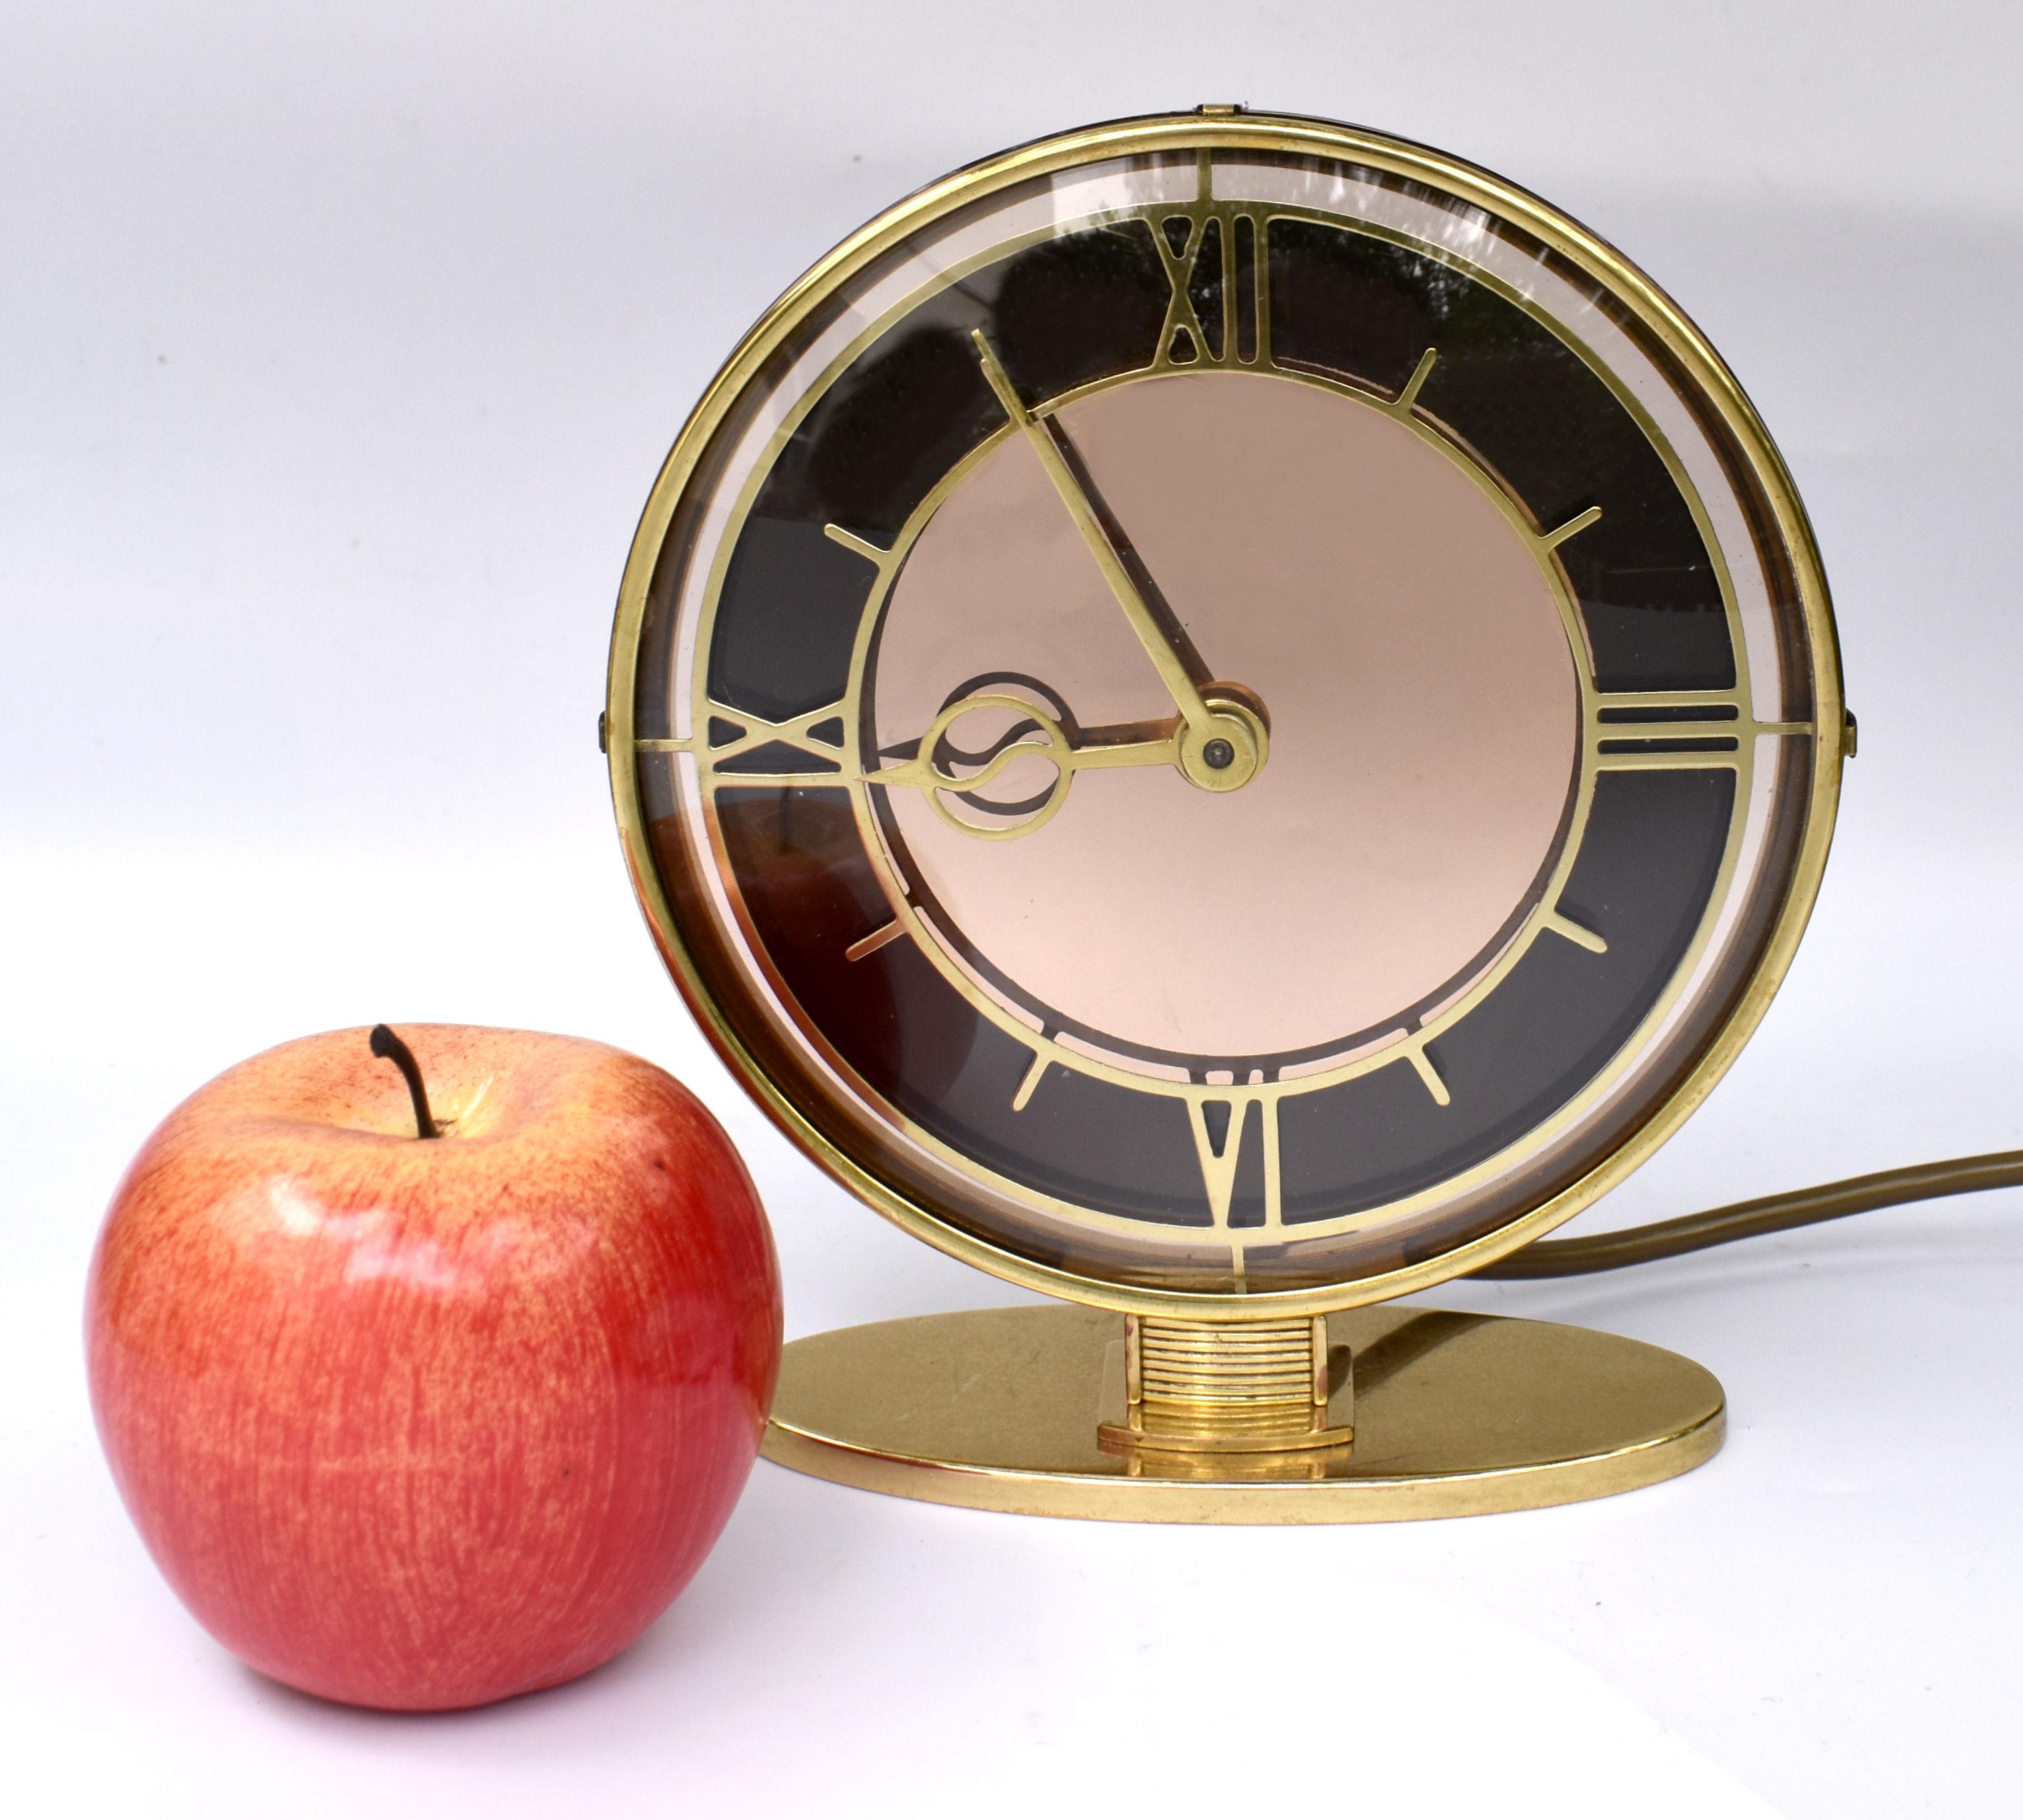 Nous vous proposons cette horloge électrique Art Déco, de fabrication britannique et datant des années 1930. Le cadran est composé d'un verre transparent et d'un miroir rose pâle avec une lunette en laiton et des chiffres stylisés. L'ensemble de